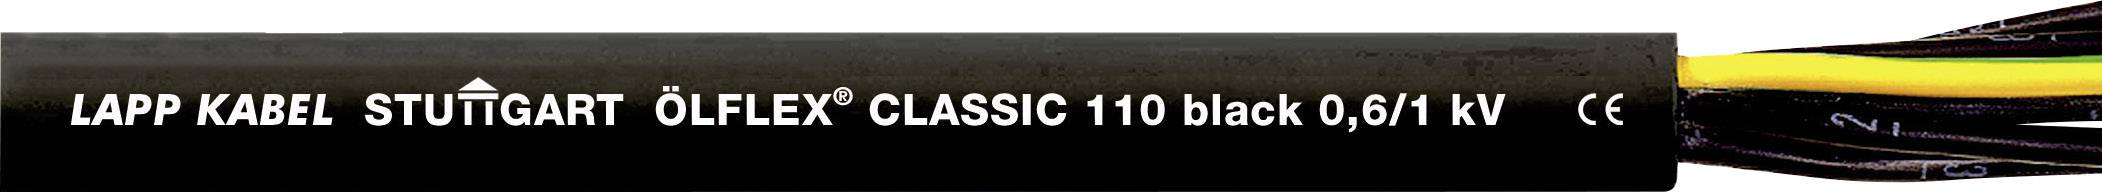 LAPP ÖLFLEX CLASSIC BLACK 110 Steuerleitung 5 G 1.50 mm² Schwarz 1120311-1 Meterware